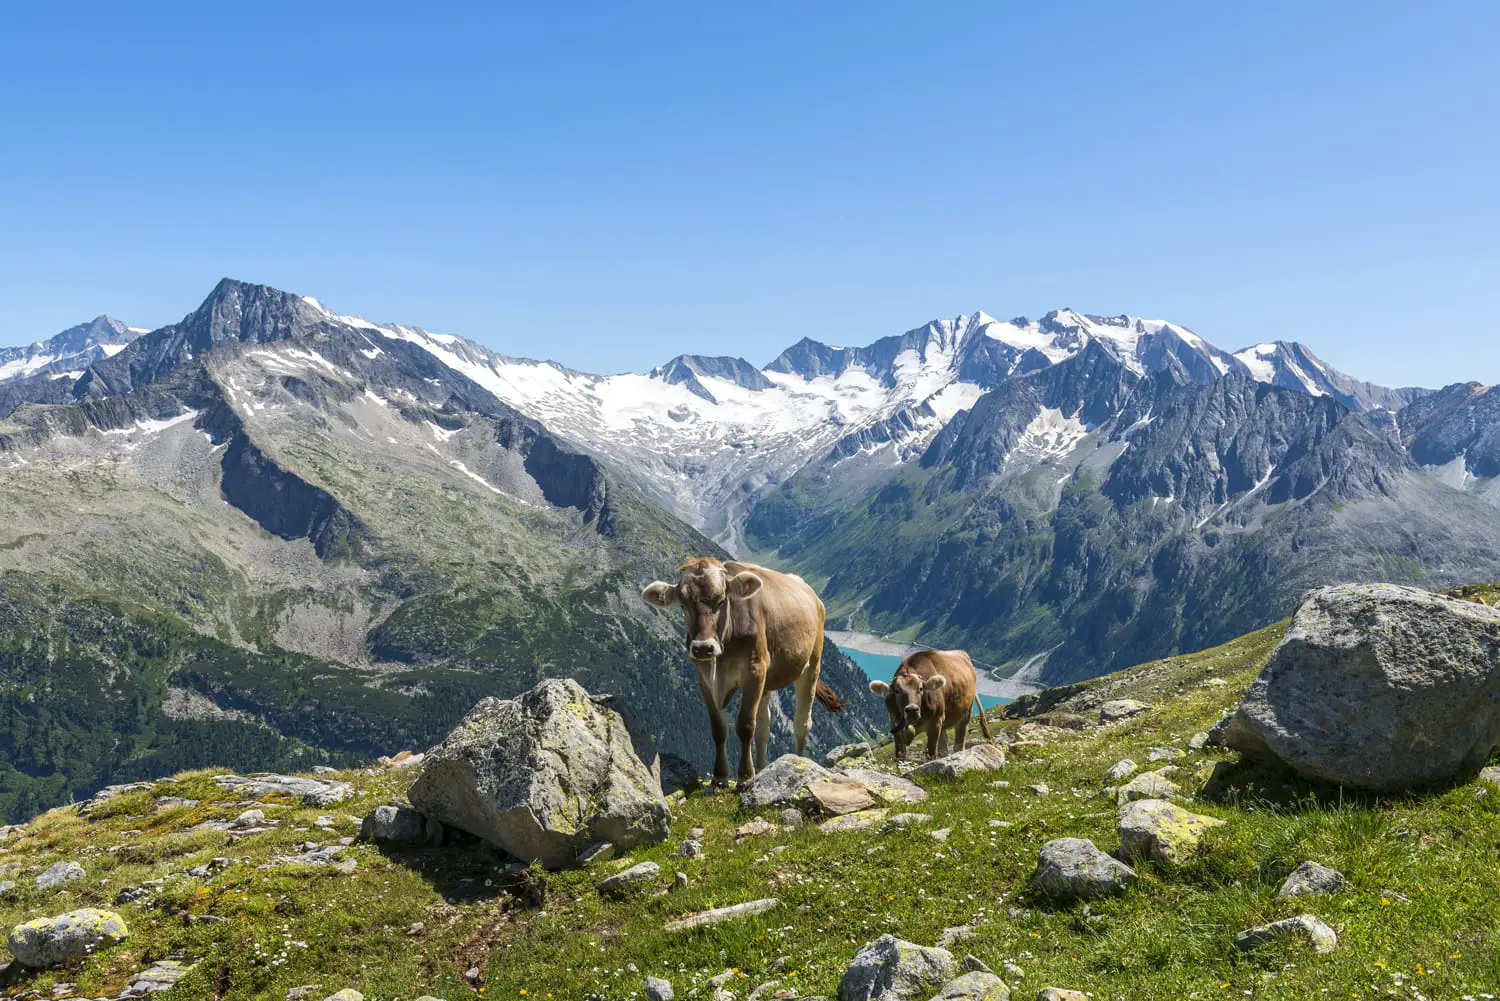 Αγελάδες στα αυστριακά βουνά - Zillertal - το καλοκαίρι.